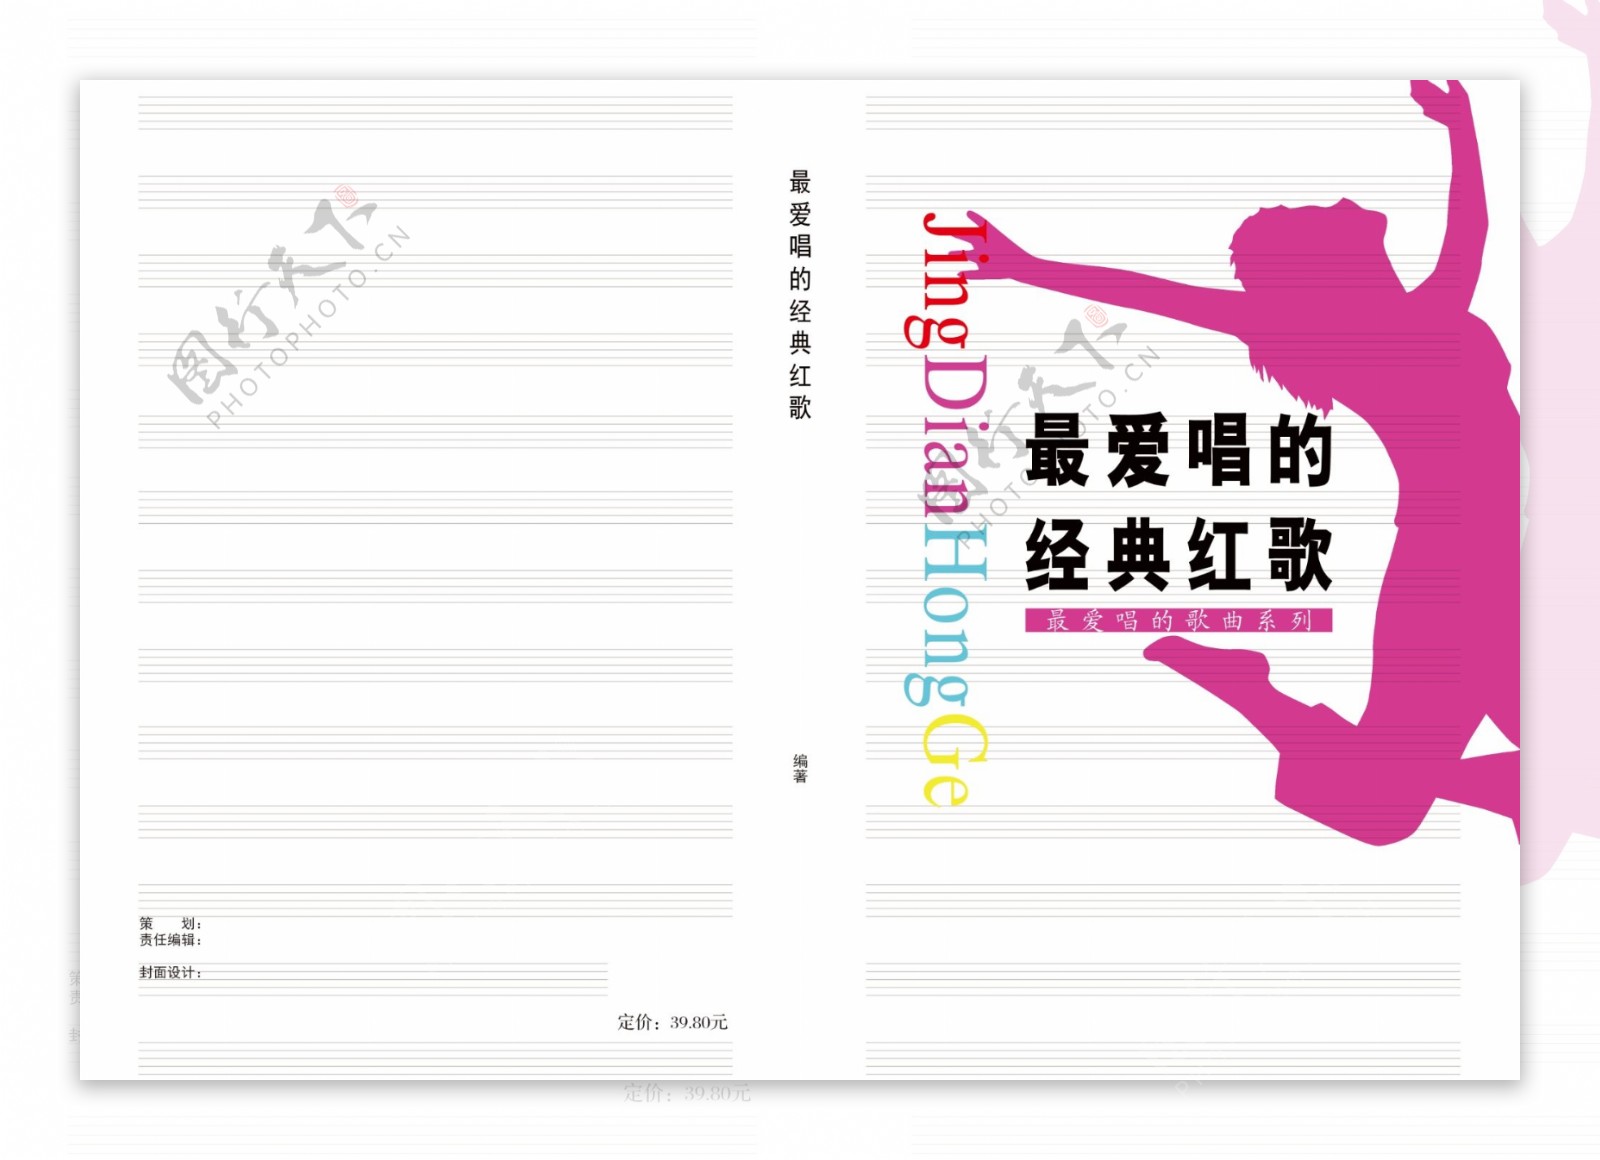 音乐舞蹈类画册封面样式图片